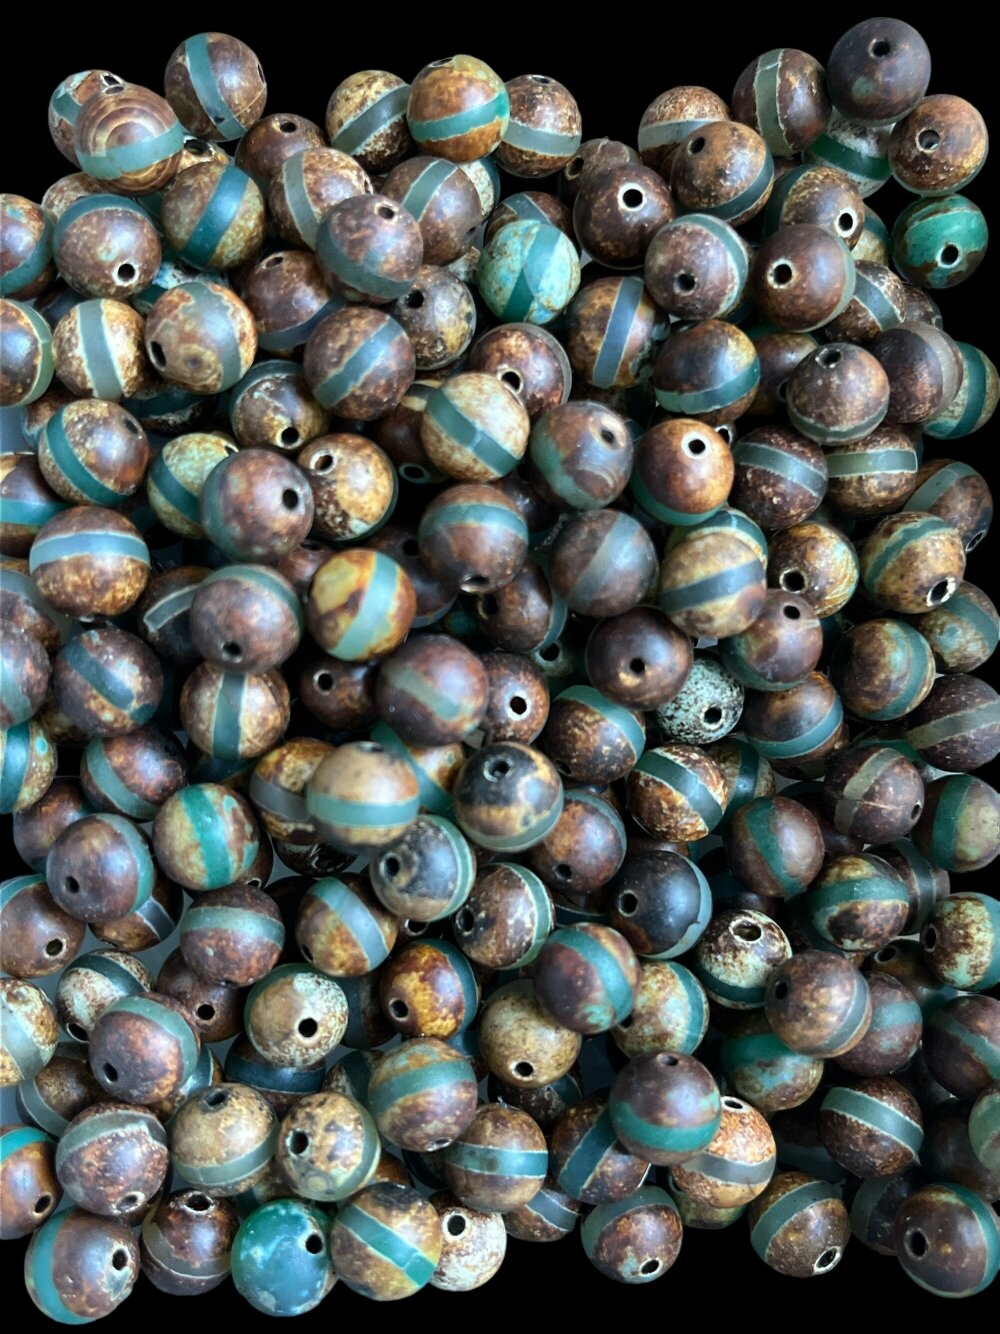 Perles d'eau, 50 000 Pcs Perles de cristal d'eau colorées pour